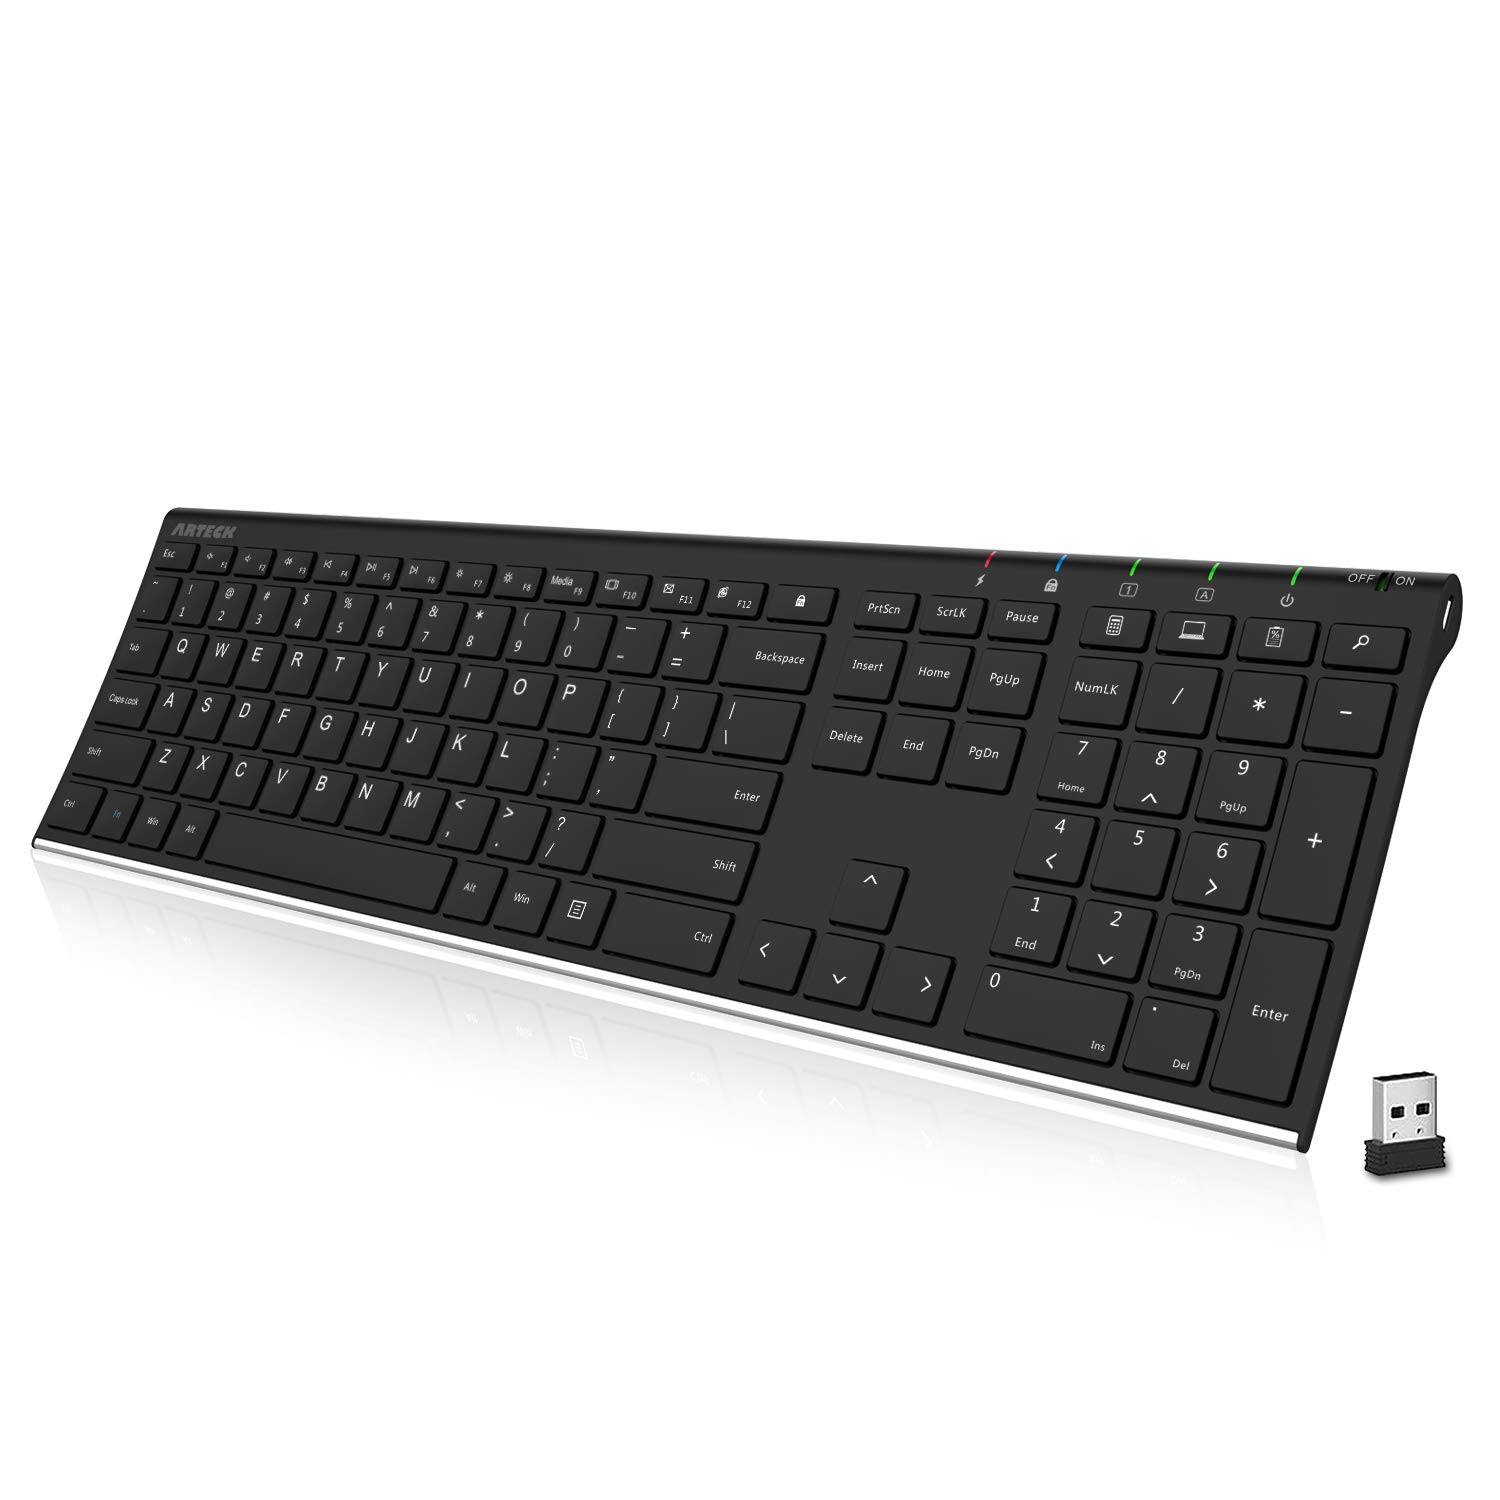 Arteck 2.4G Wireless Keyboard Stainless Steel Ultra Slim Full Size